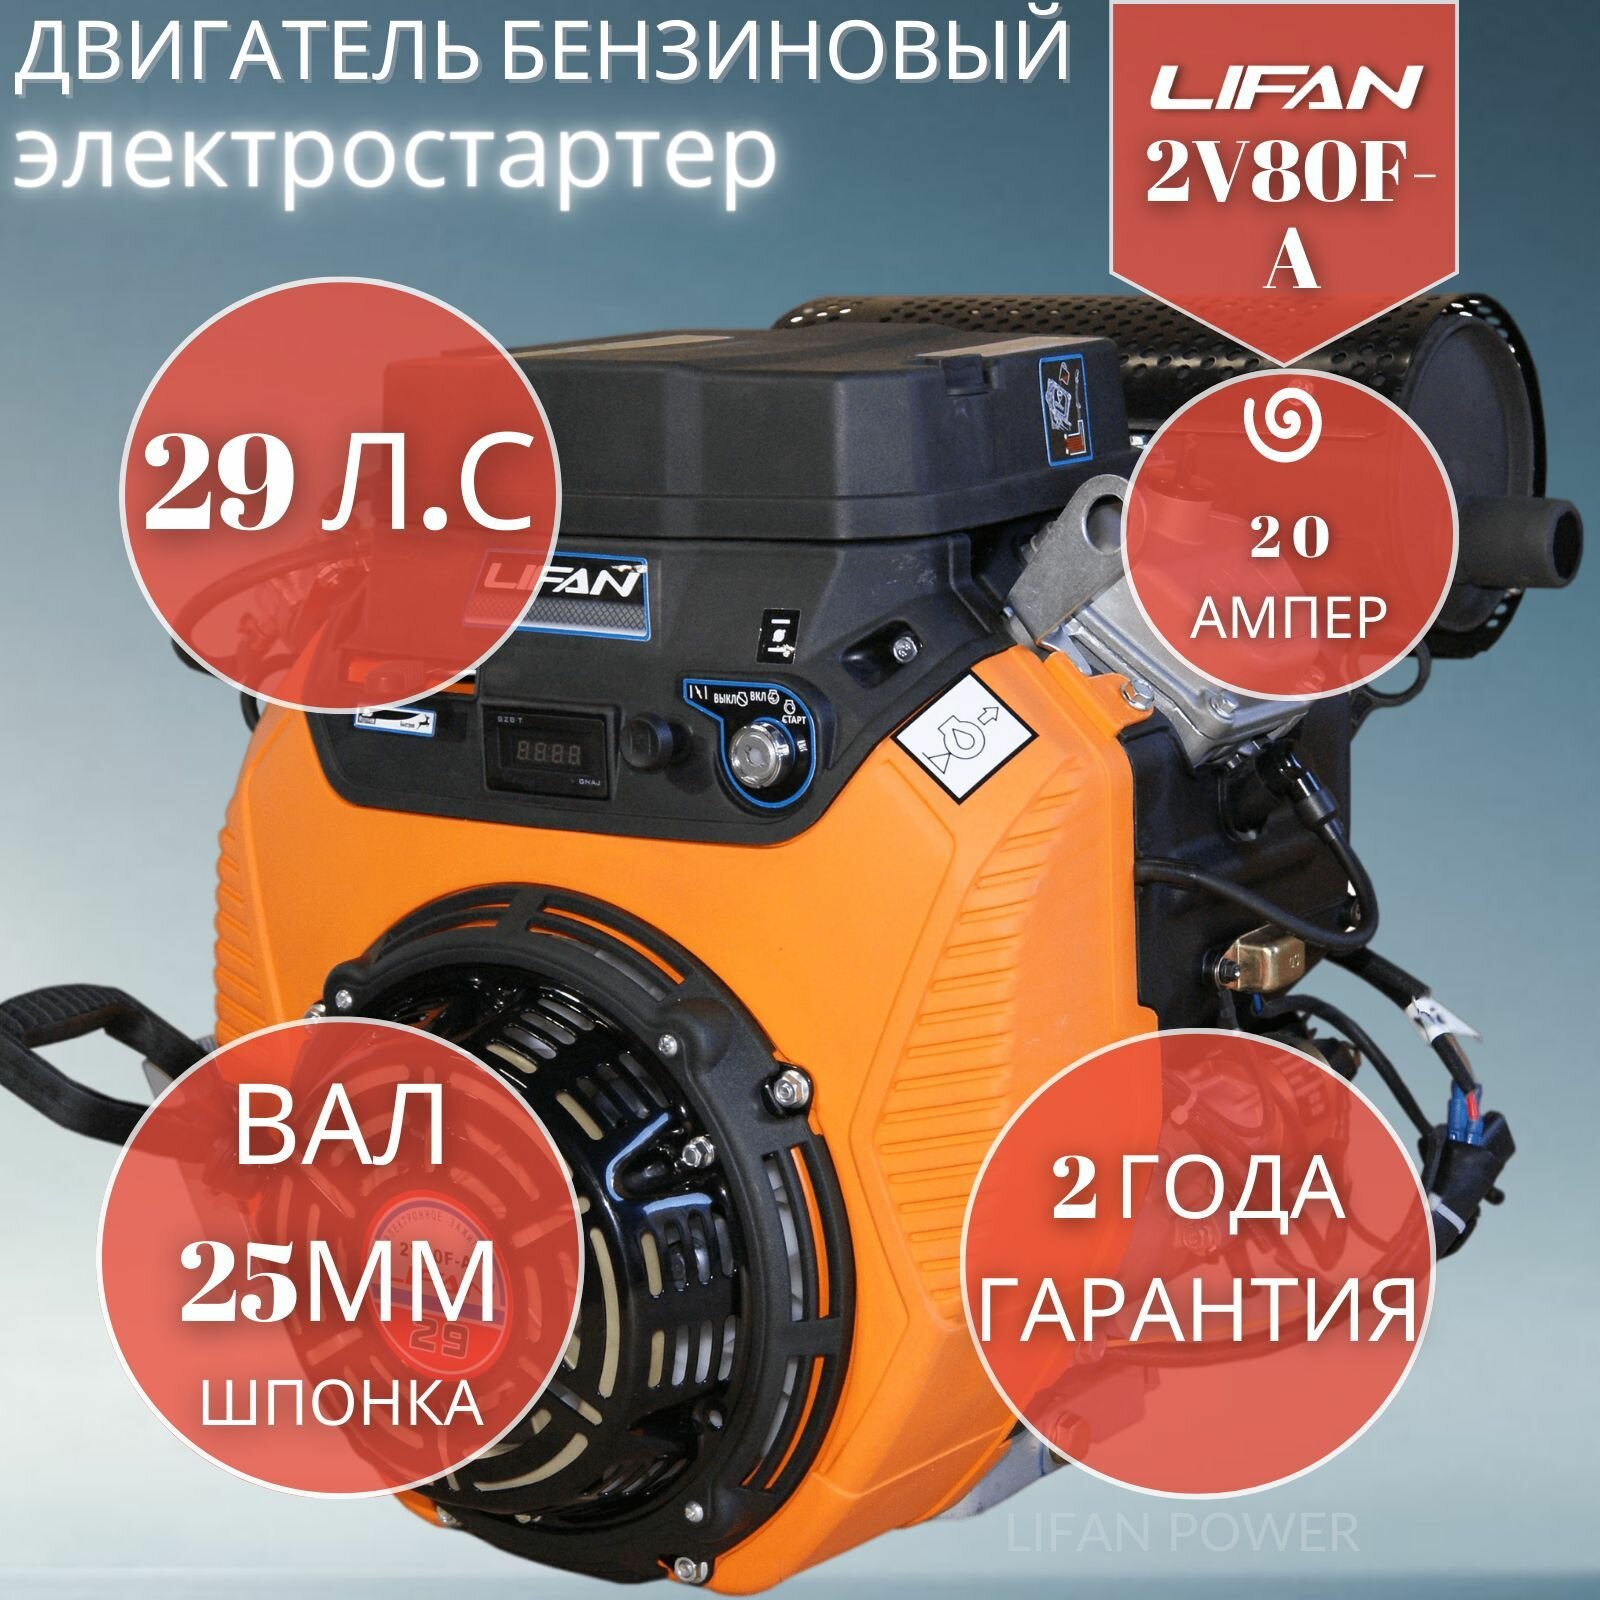 Двигатель бензиновый Lifan 2V80F-2A электростартер (29 л. с, горизонтальный вал 25 мм)